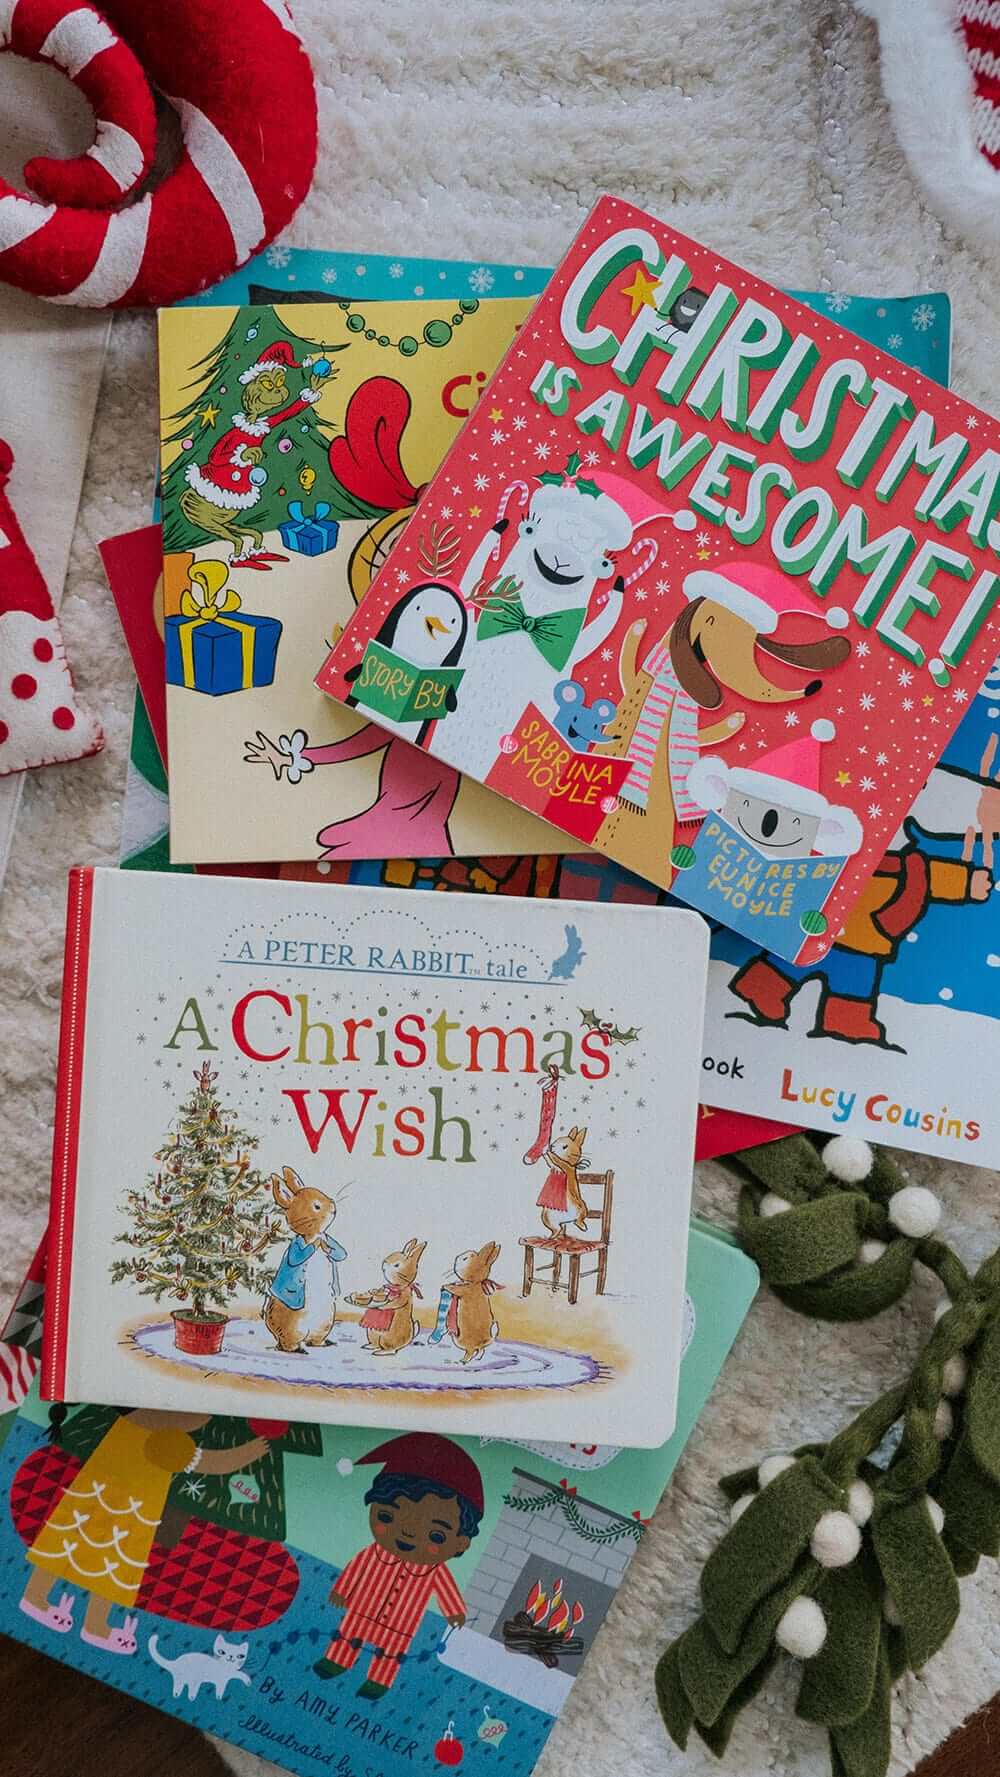 Children's Christmas Books on floor